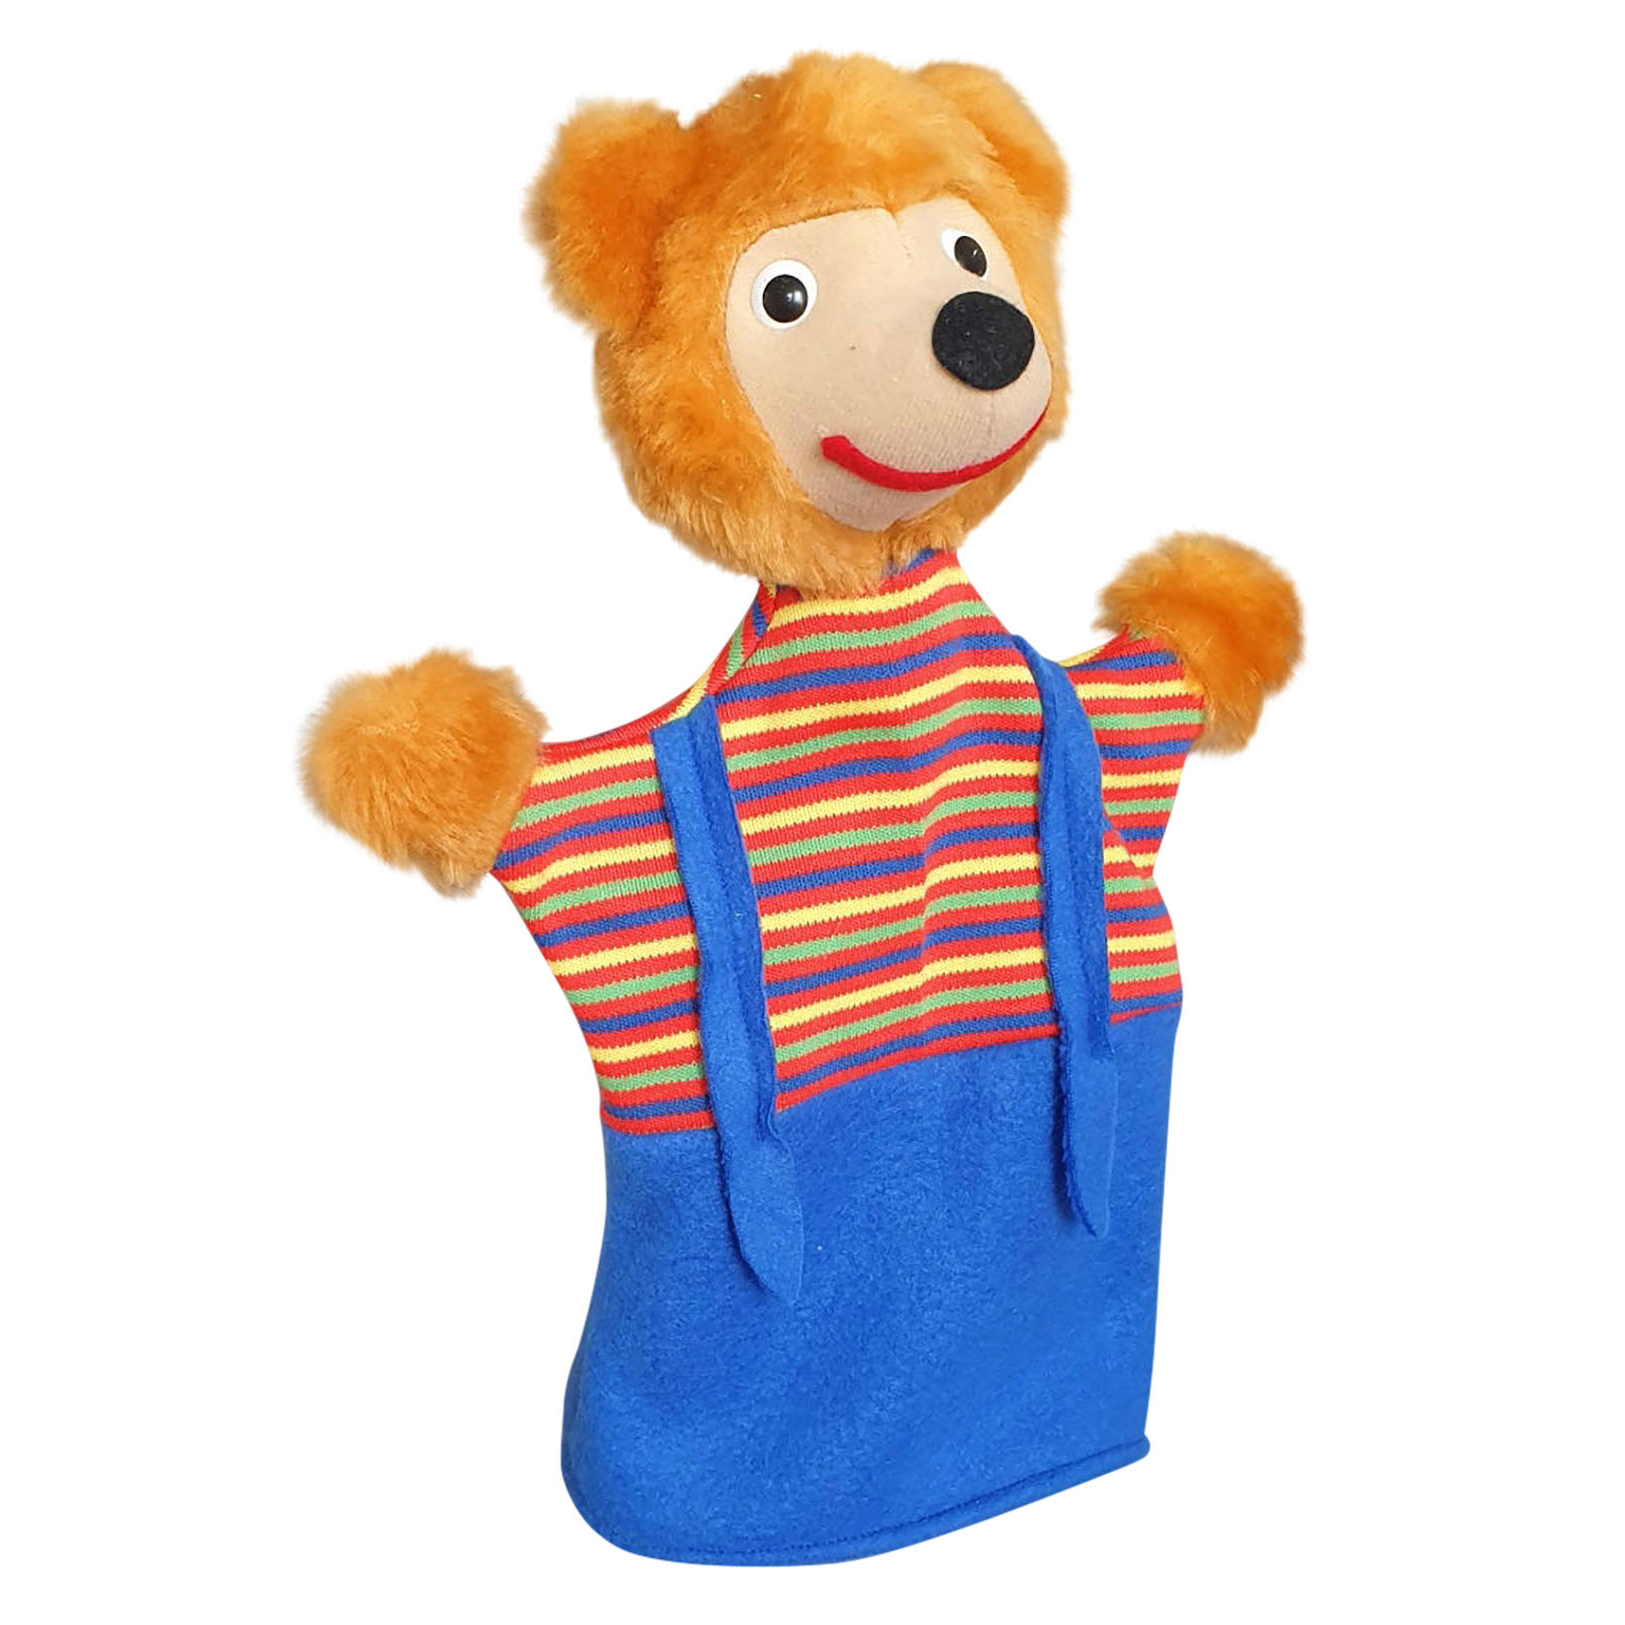 Hand puppet Petz the bear - KERSA classic